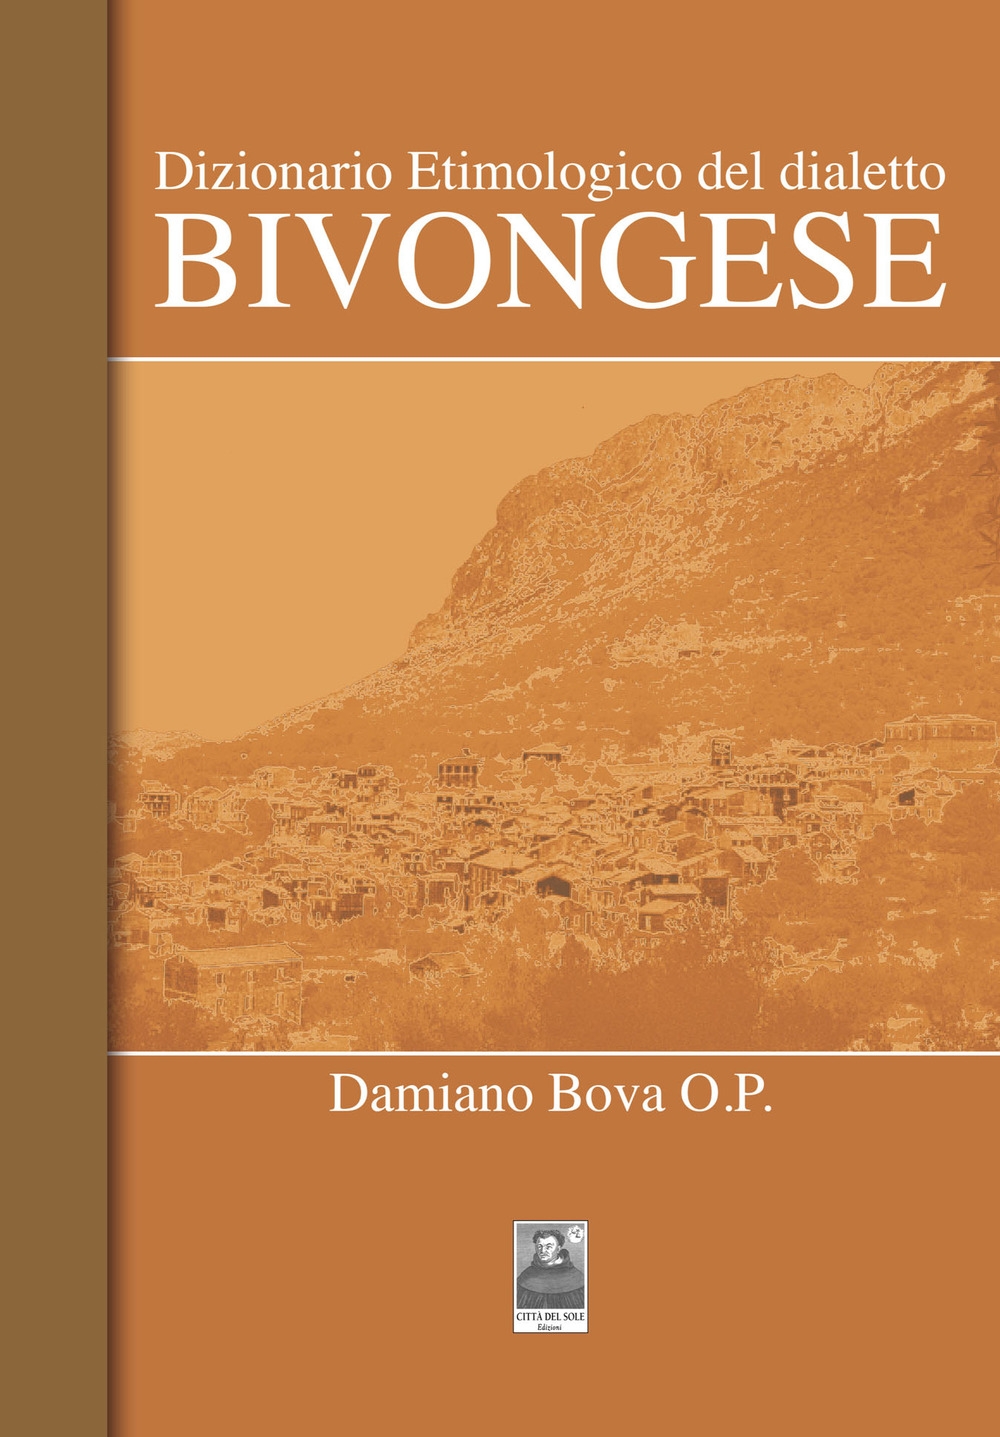 9788882380236 Damiano Bova 2017 - Dizionario etimologico del dialetto  bivongese 